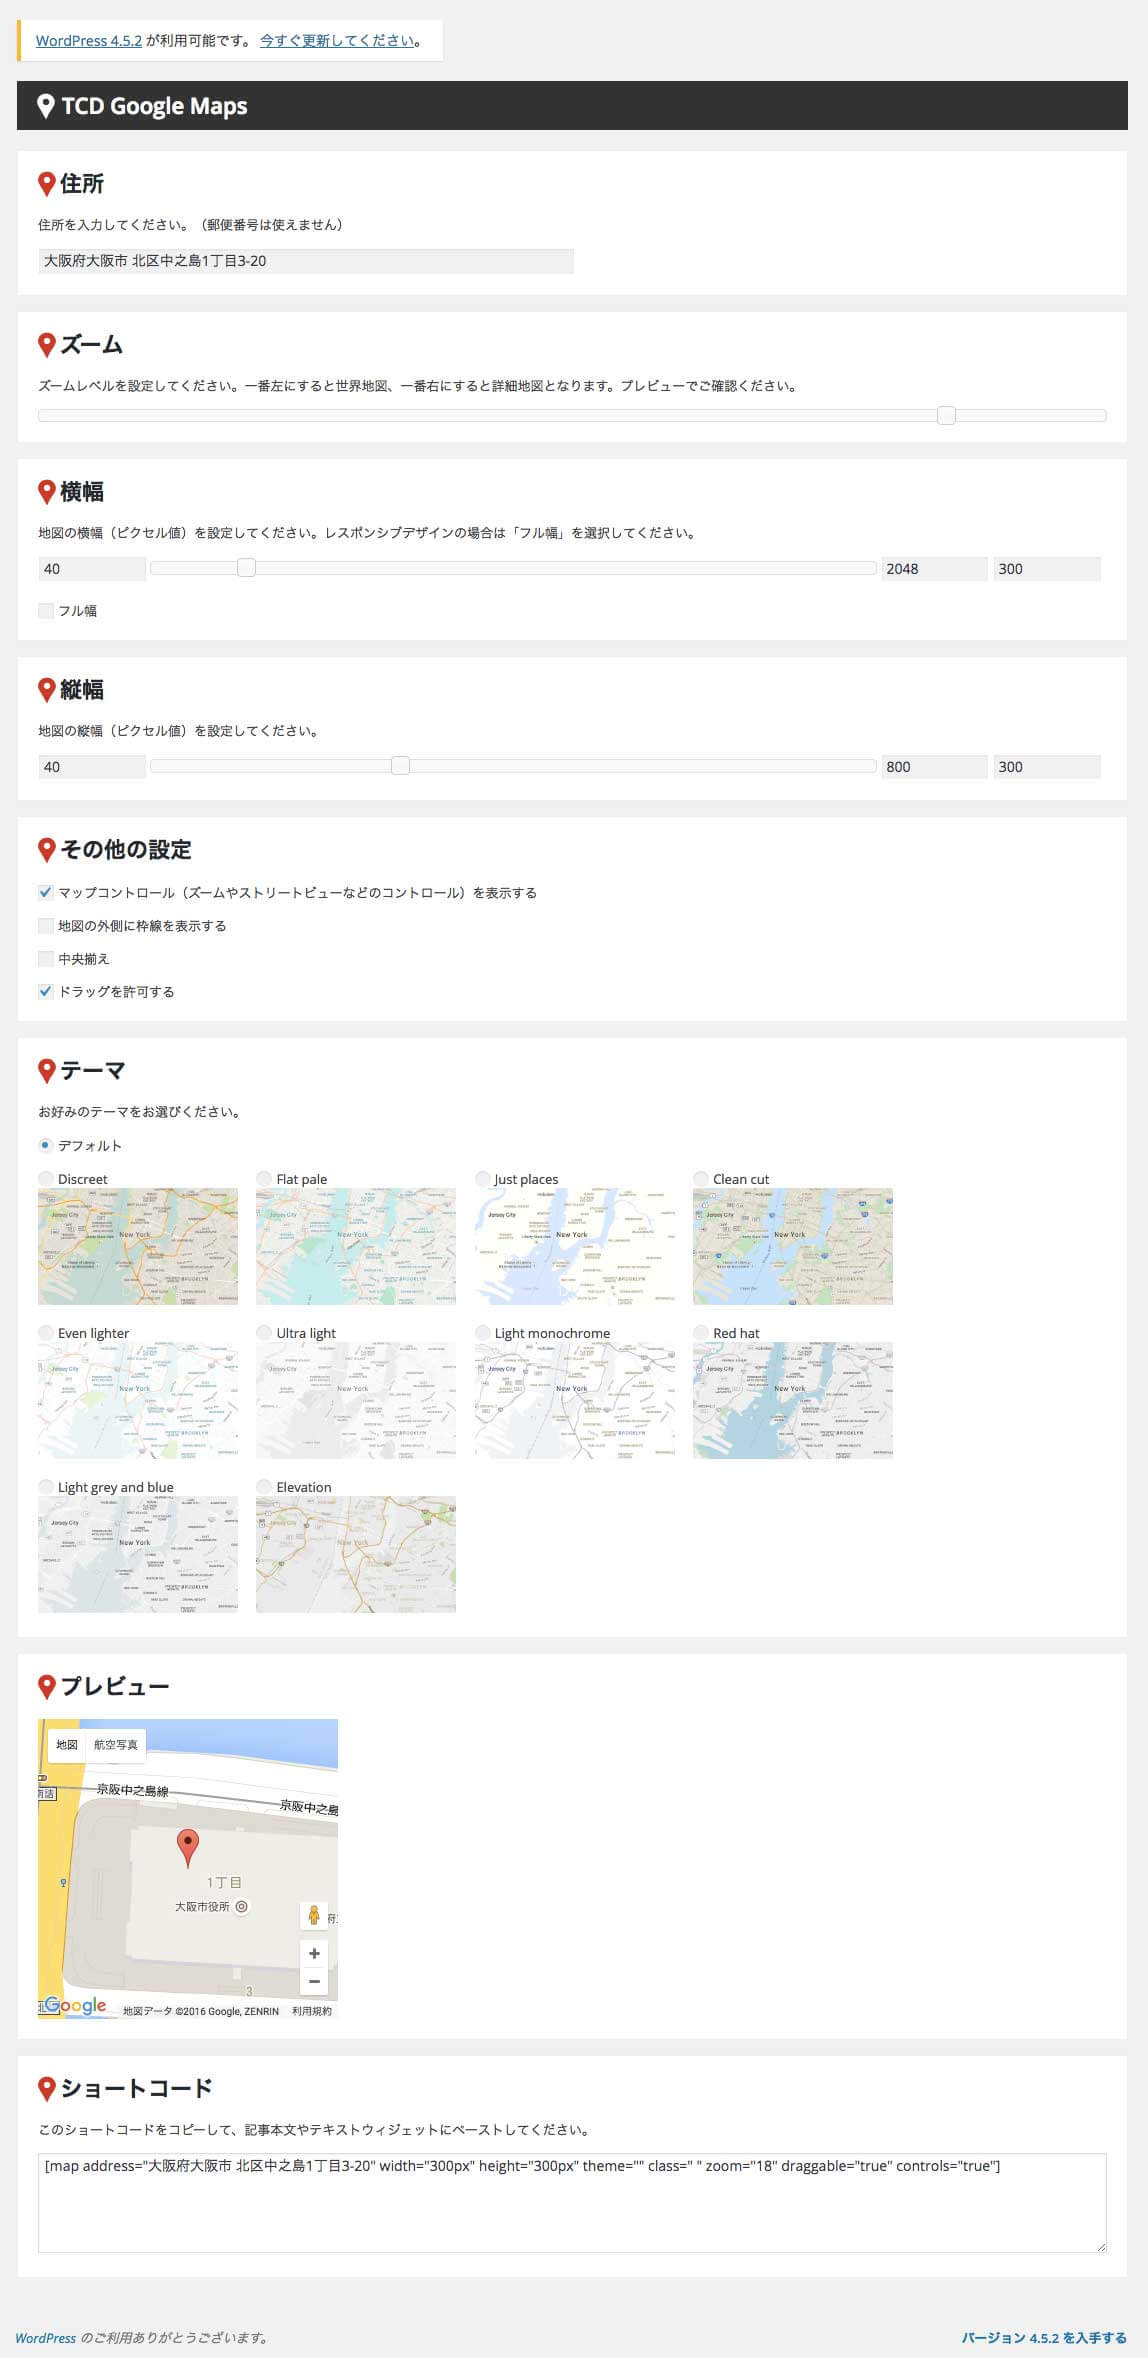 TCD Google Mapsの各項目を埋める